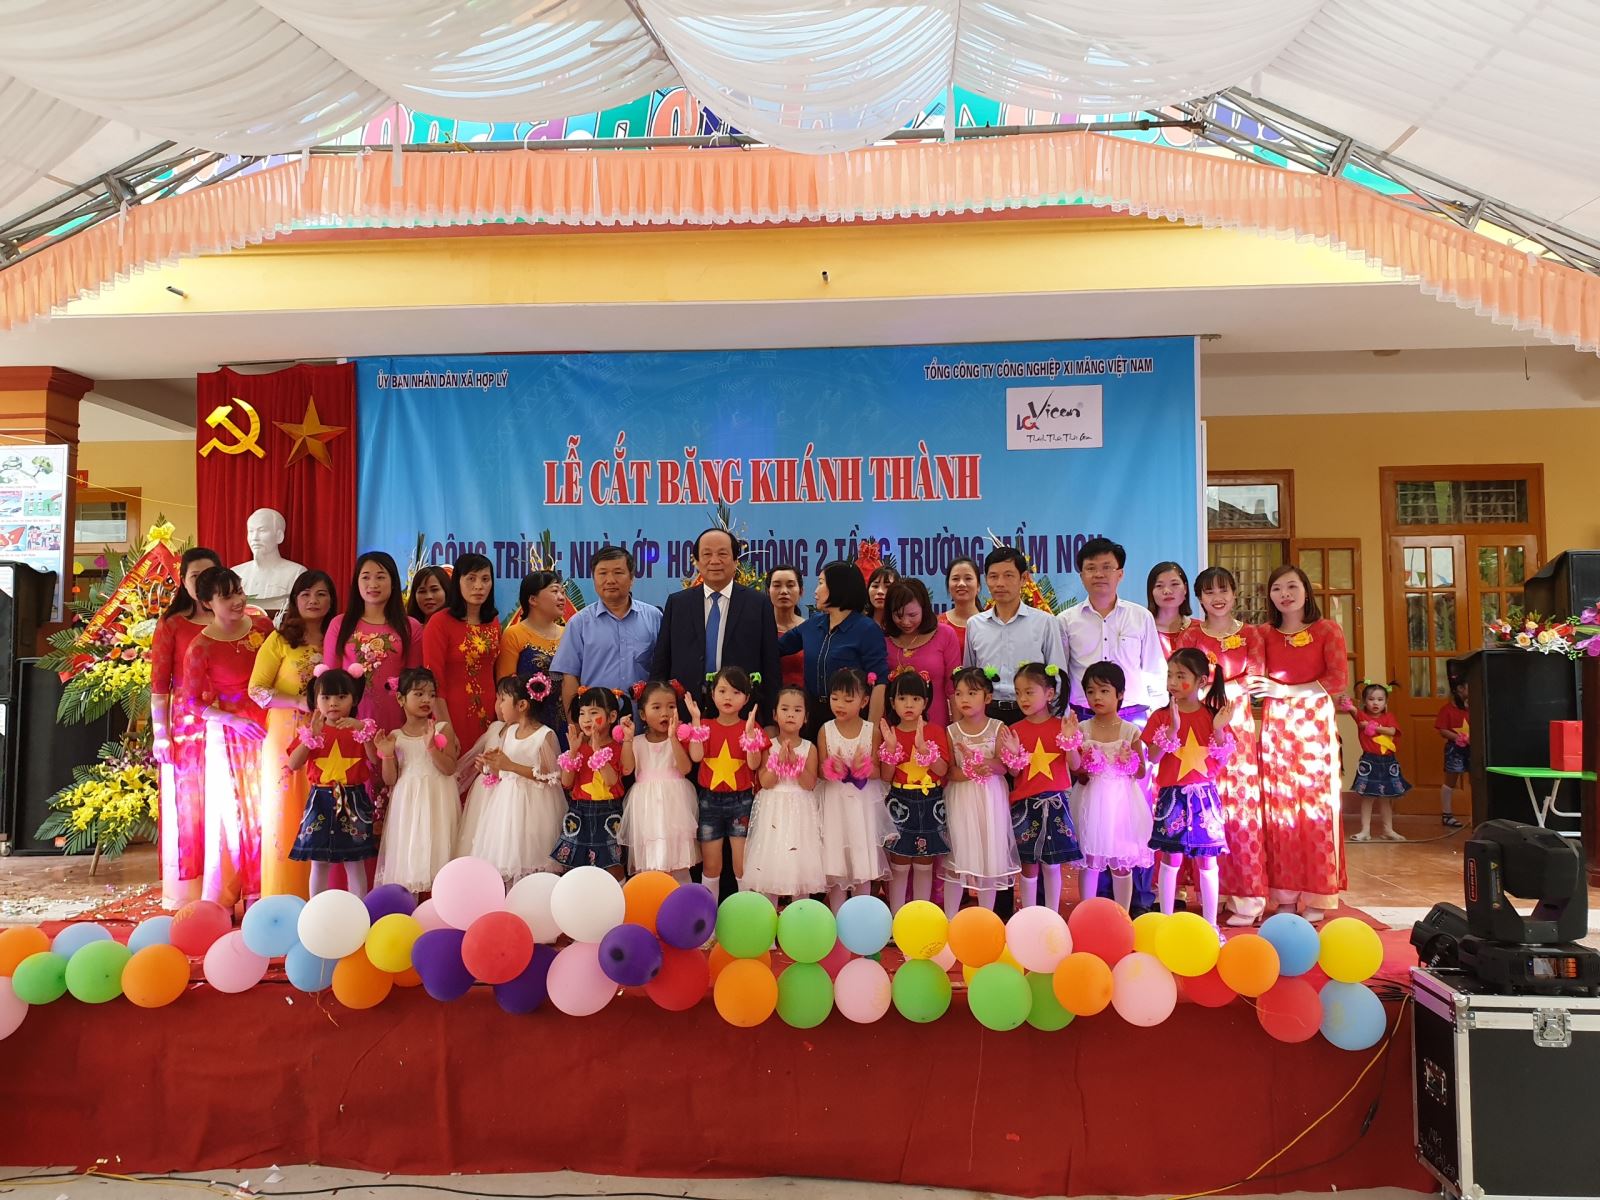 Lễ cắt băng khánh thành Trường mầm non xã Đức Lý, Hợp Lý tỉnh Hà Nam